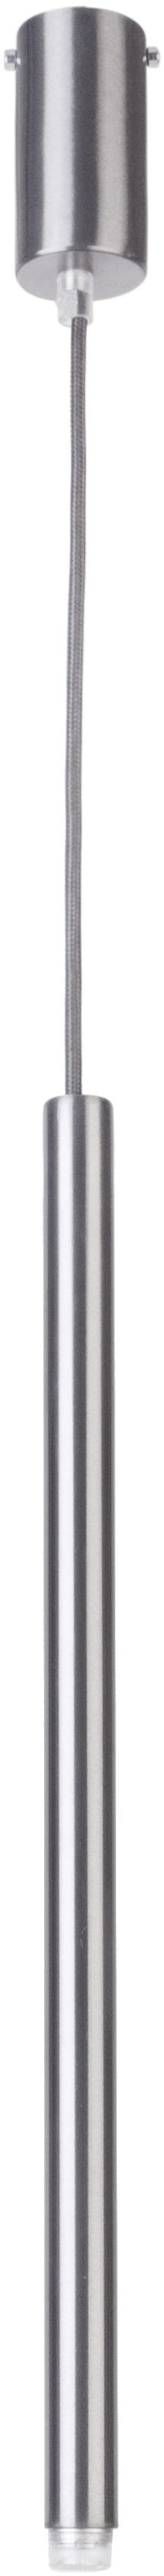 Moderne Pendelleuchte Silber Zylinder G9 Ø5 cm rund